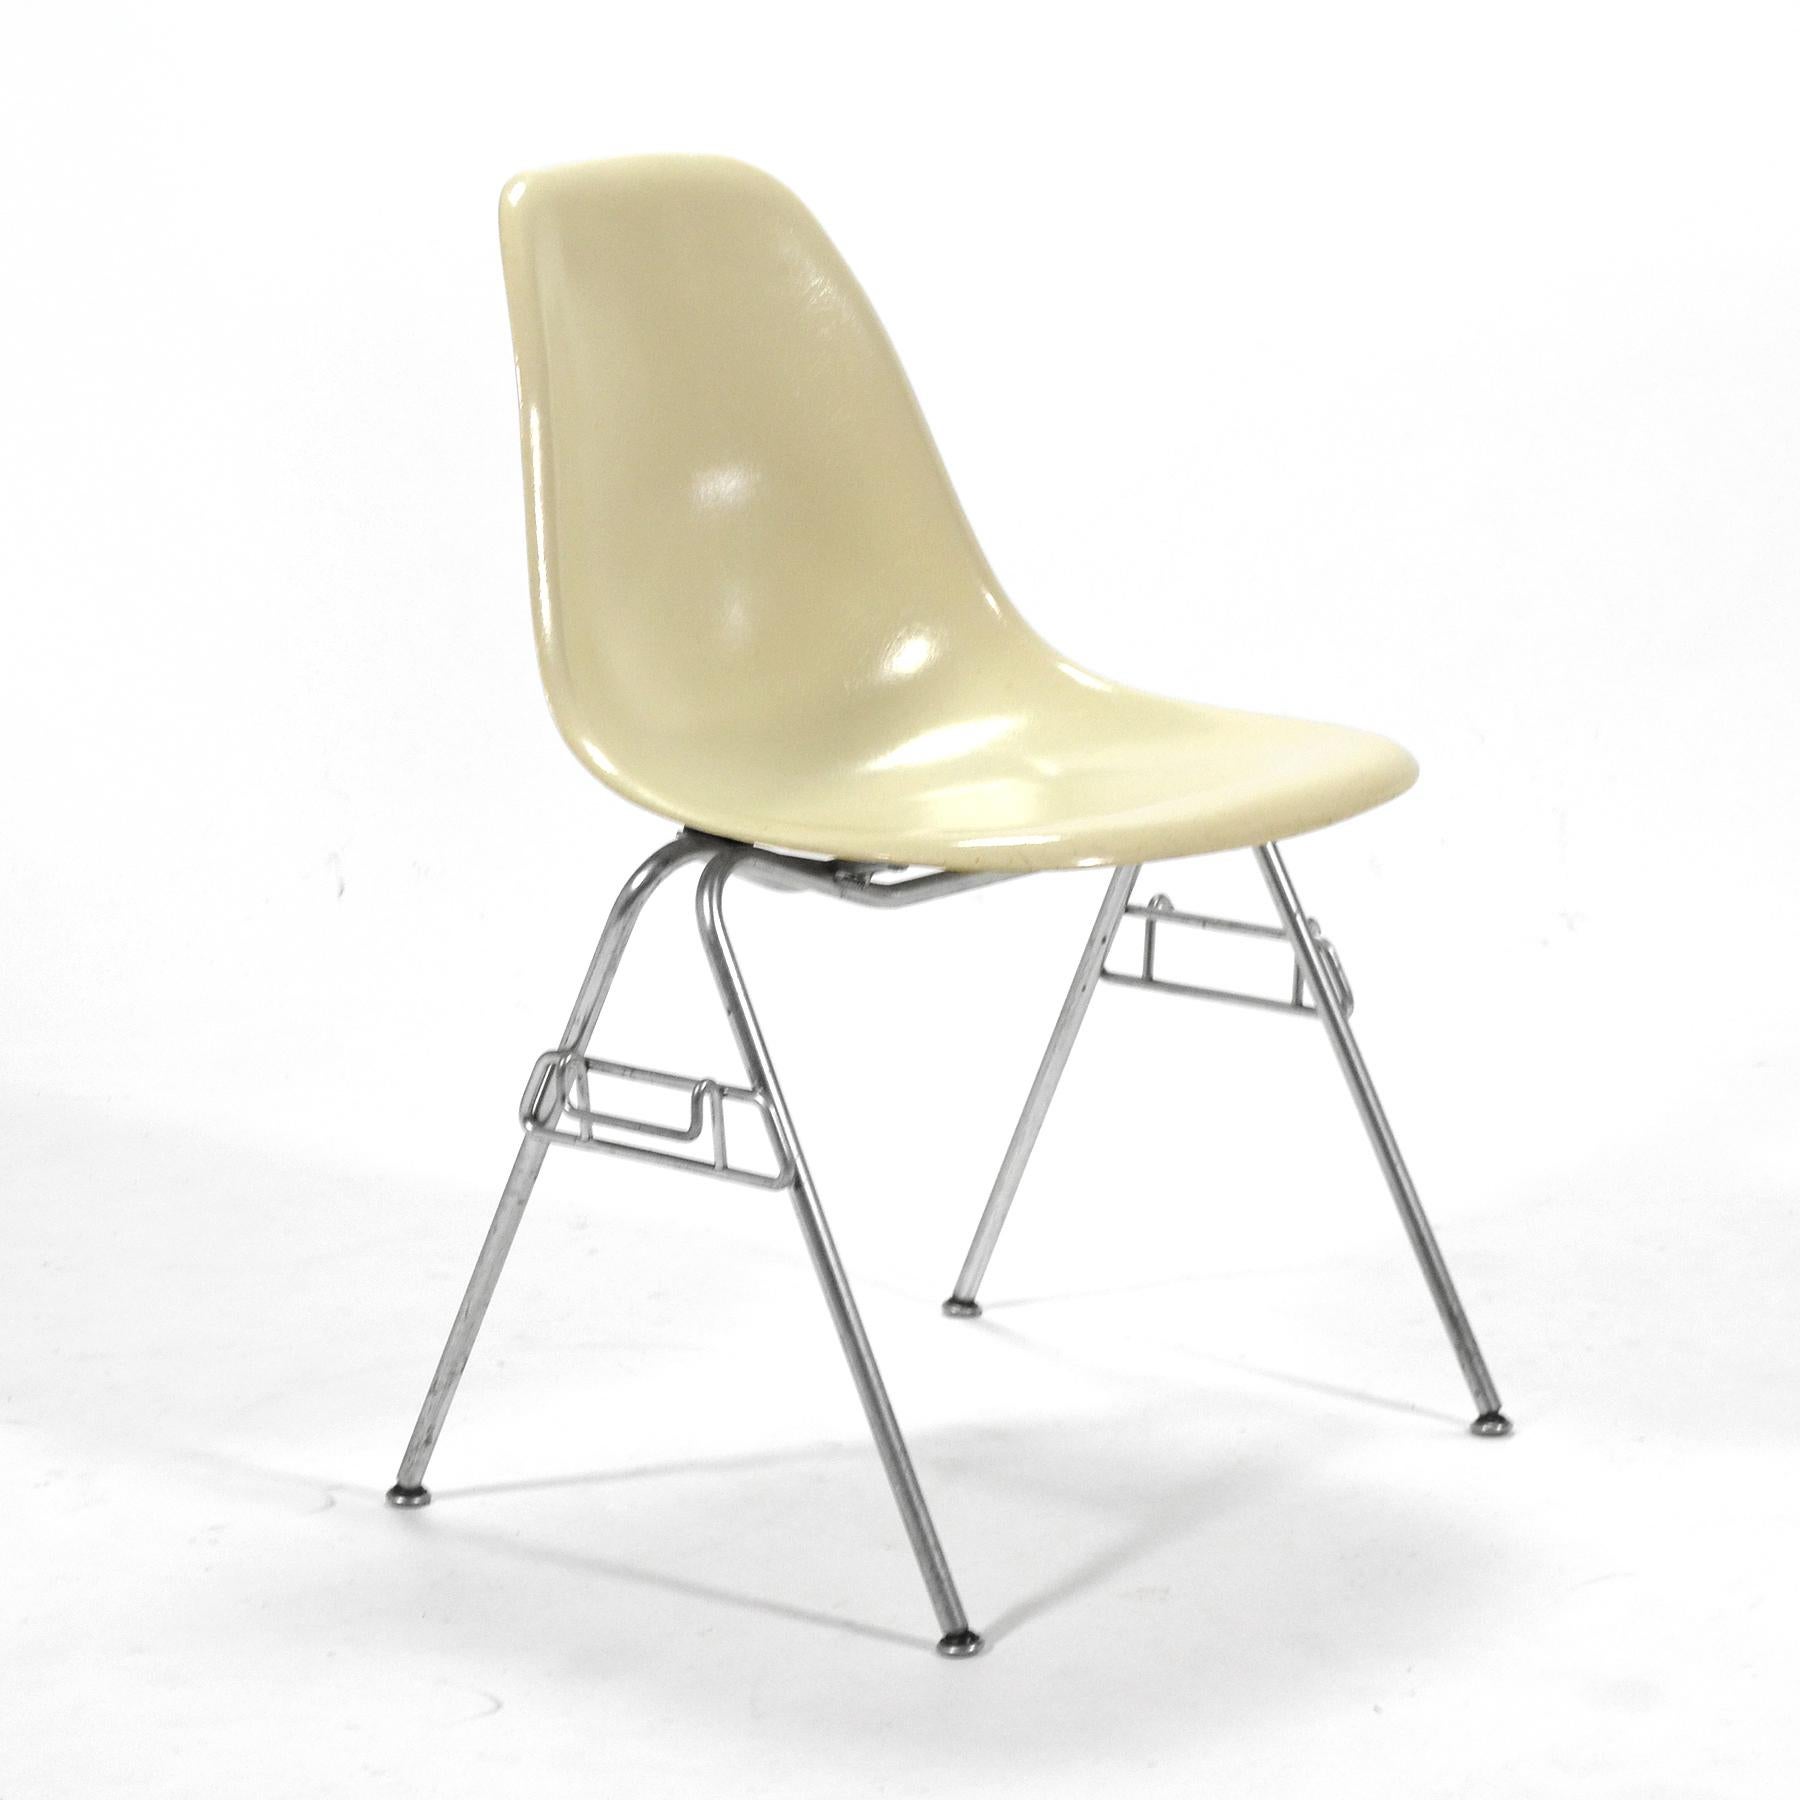 Il s'agit d'un fantastique ensemble de chaises latérales empilables en fibre de verre conçu par Charles et Ray Eames pour Herman Miller. Les importantes conceptions d'après-guerre des Eames en contreplaqué et en fibre de verre sont bien documentées